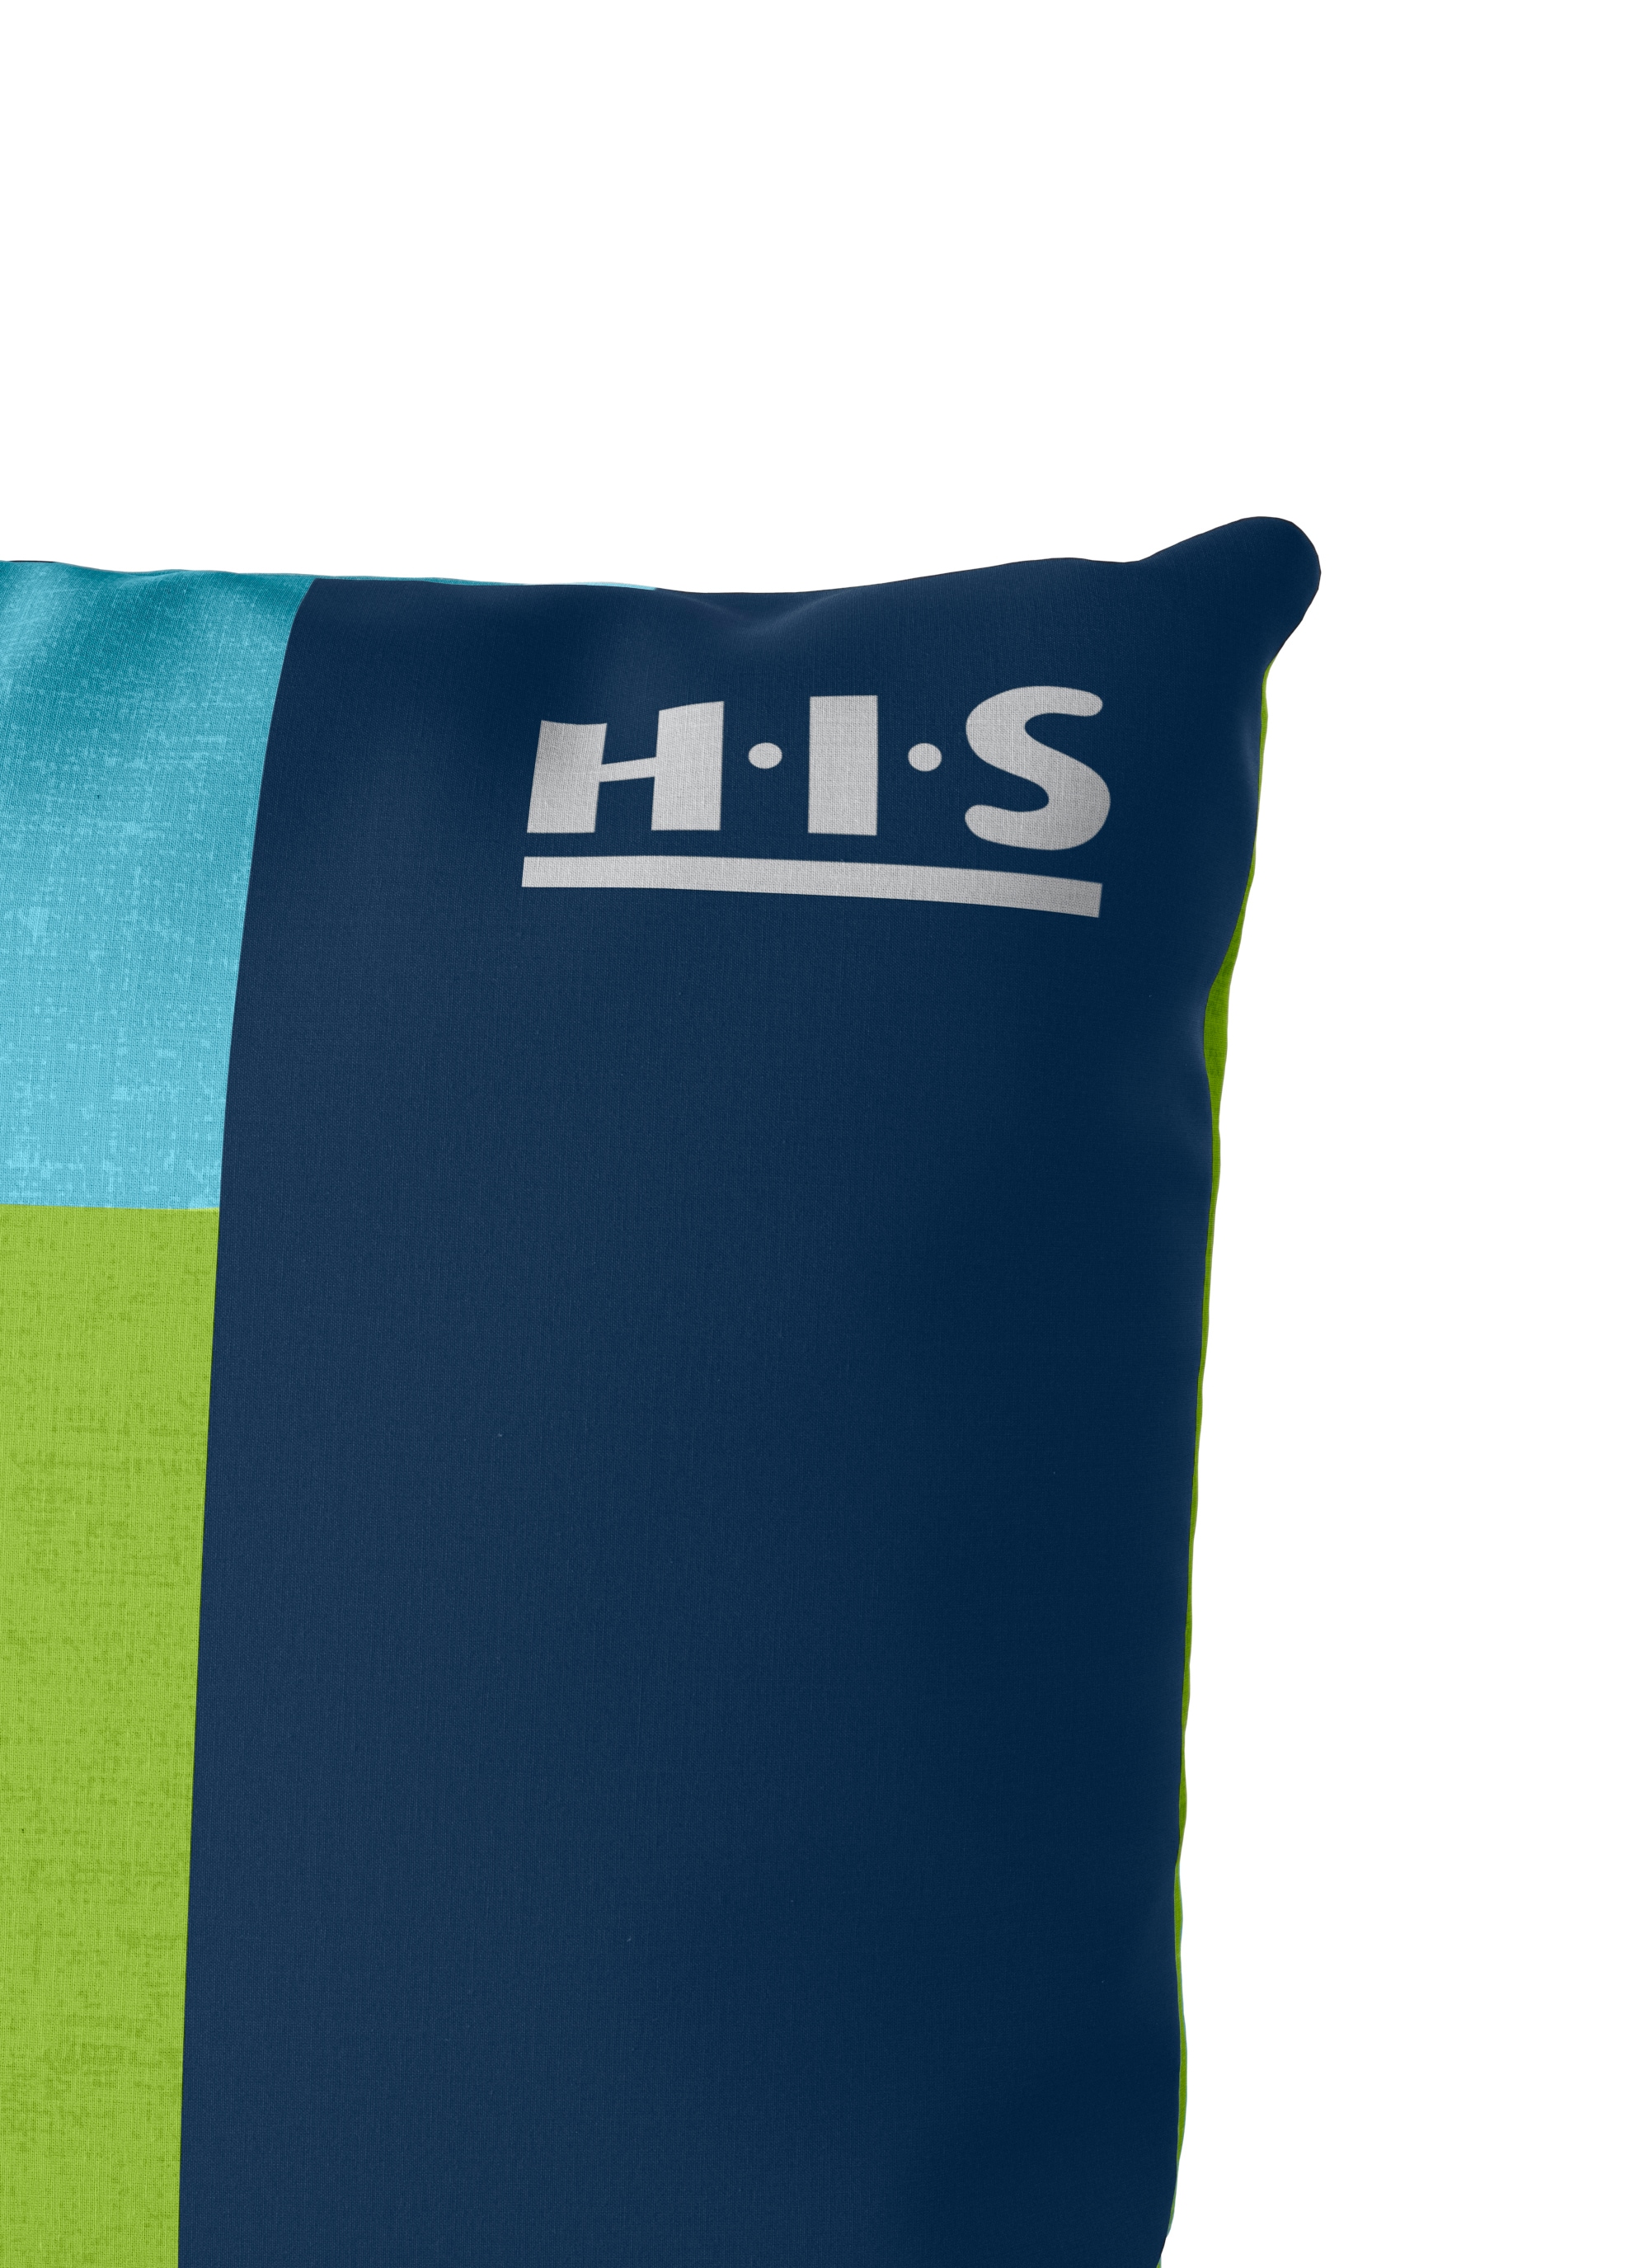 H.I.S Bettwäsche »Etienne in Gr. 135x200 oder 155x220 cm«, (2 tlg.), Bettwäsche aus Baumwolle, zeitlose Bettwäsche mit Streifen-Design